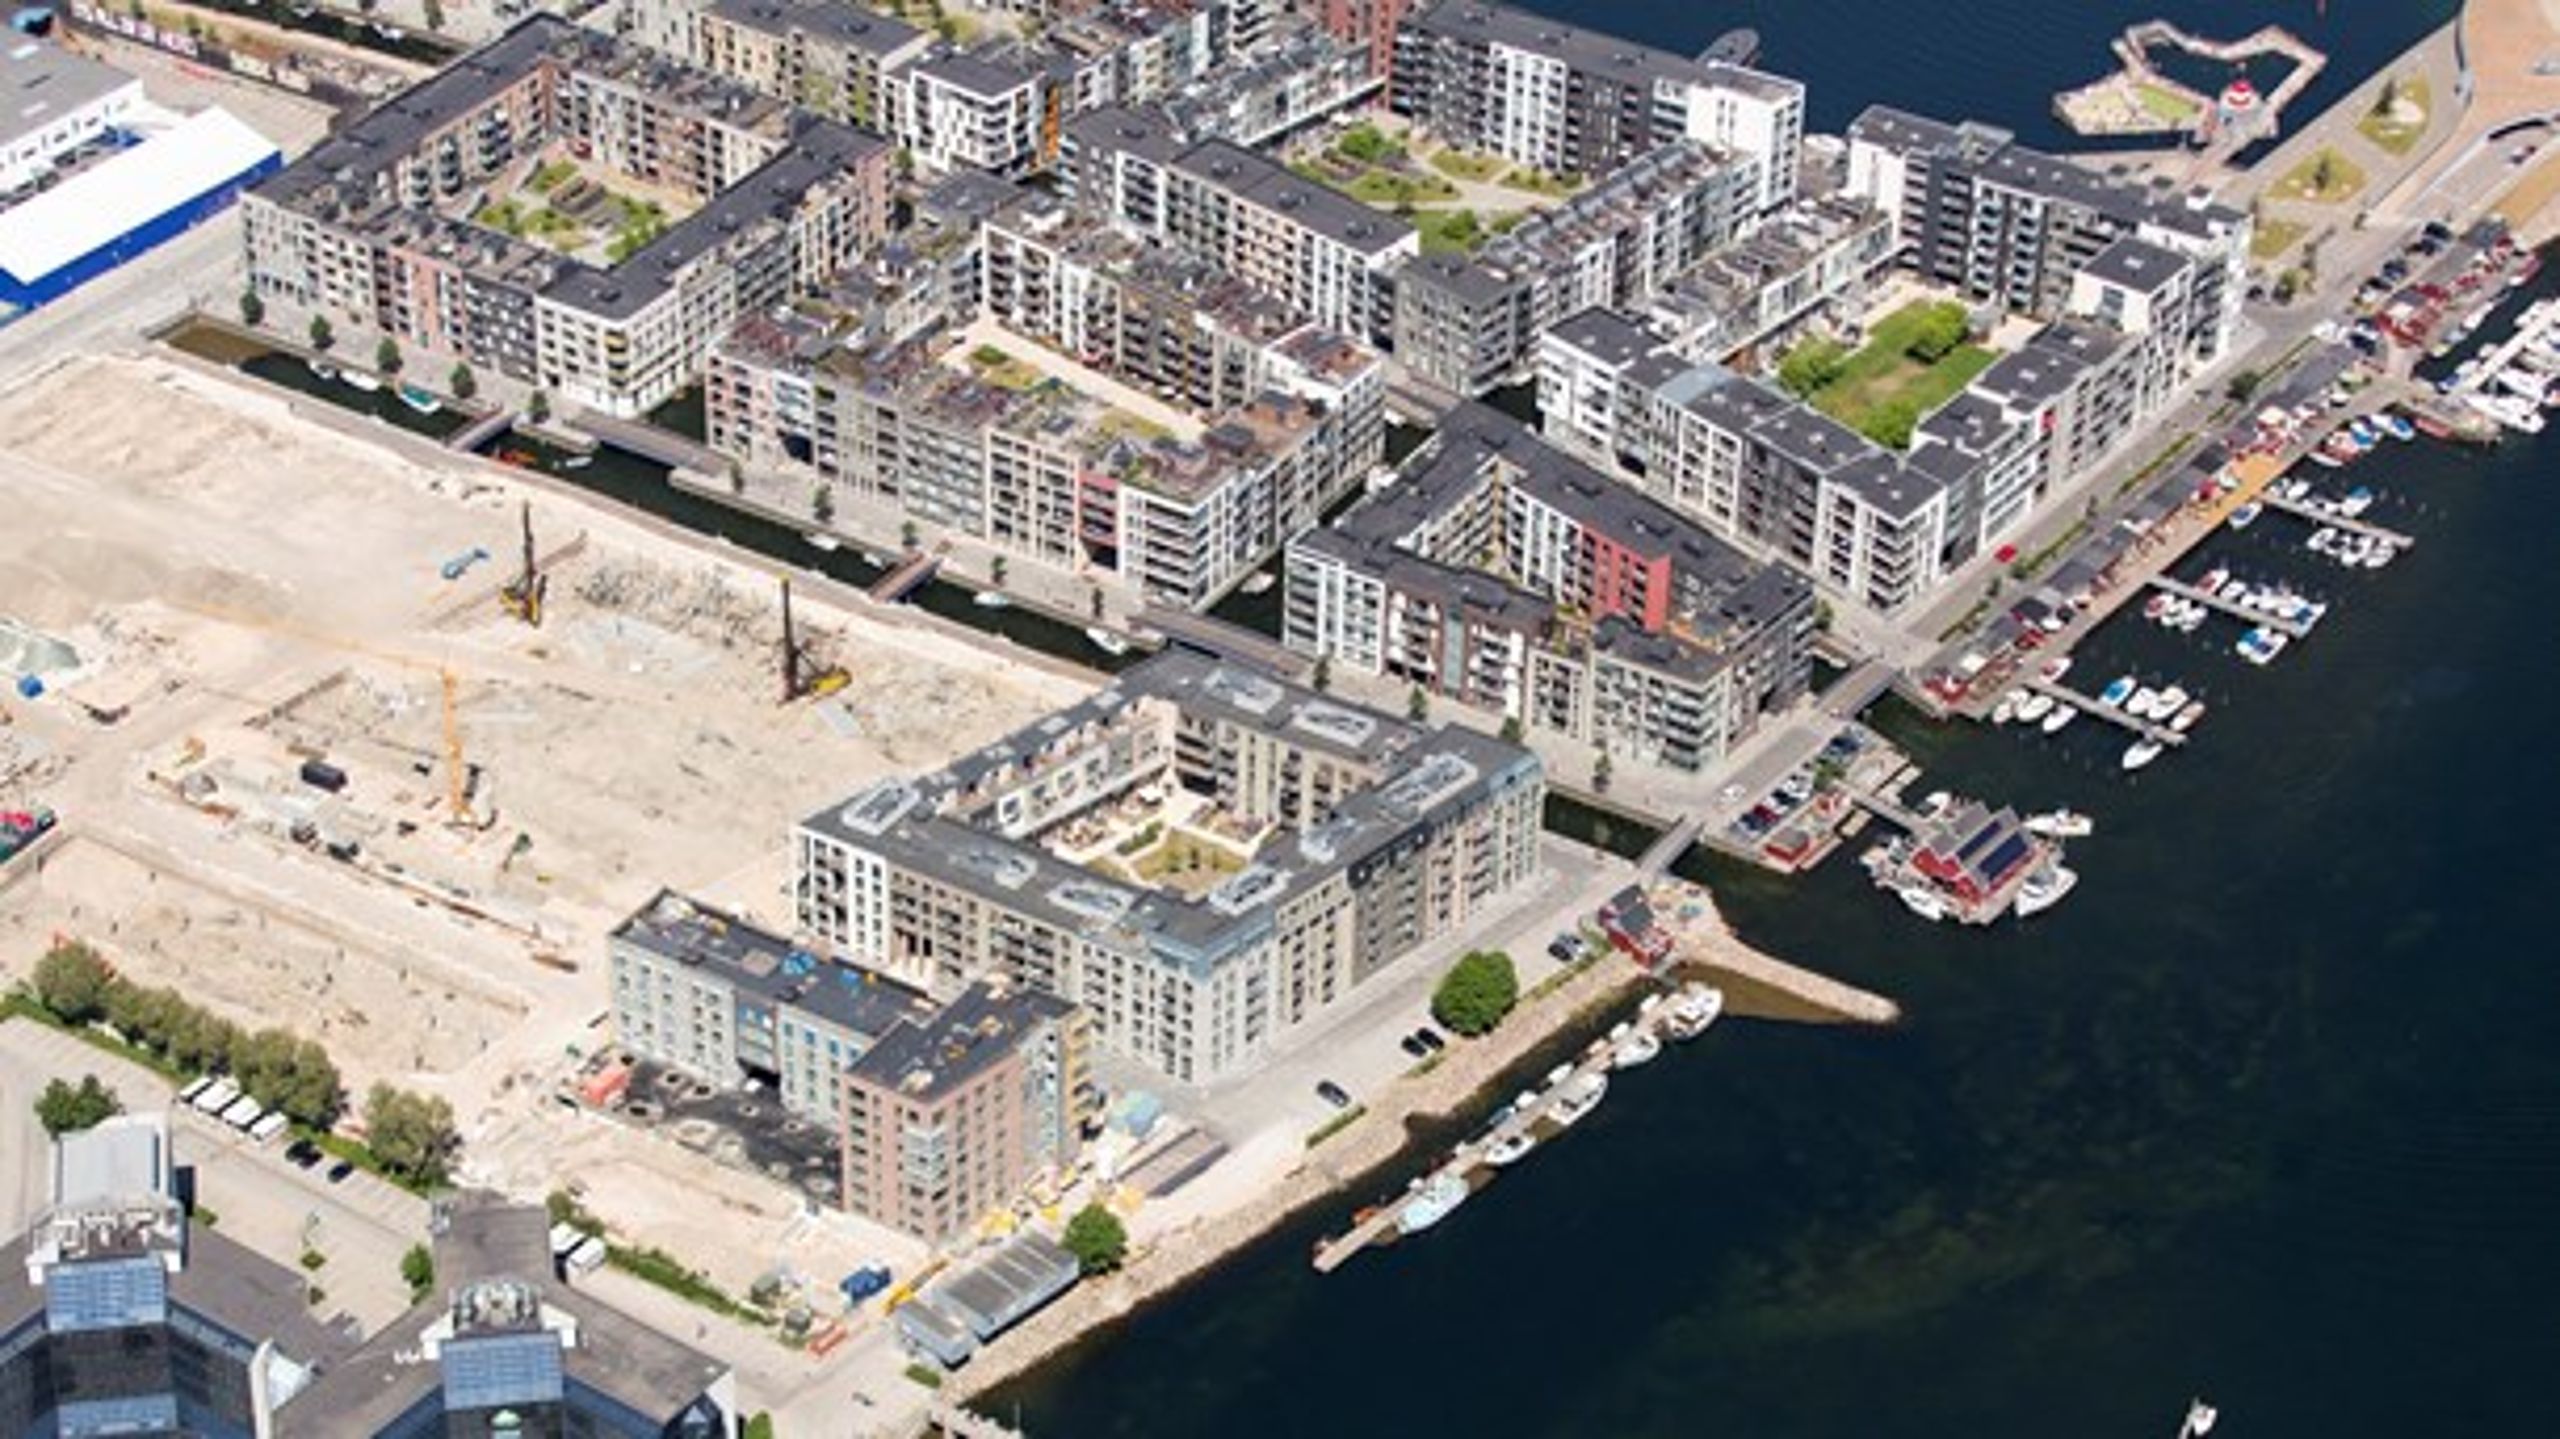 Udenlandske investorer hungrer efter dansk viden og erfaring, når verdens byer skal designes, bygges og indrettes bæredygtigt, skriver formandskabet i Gate 21.